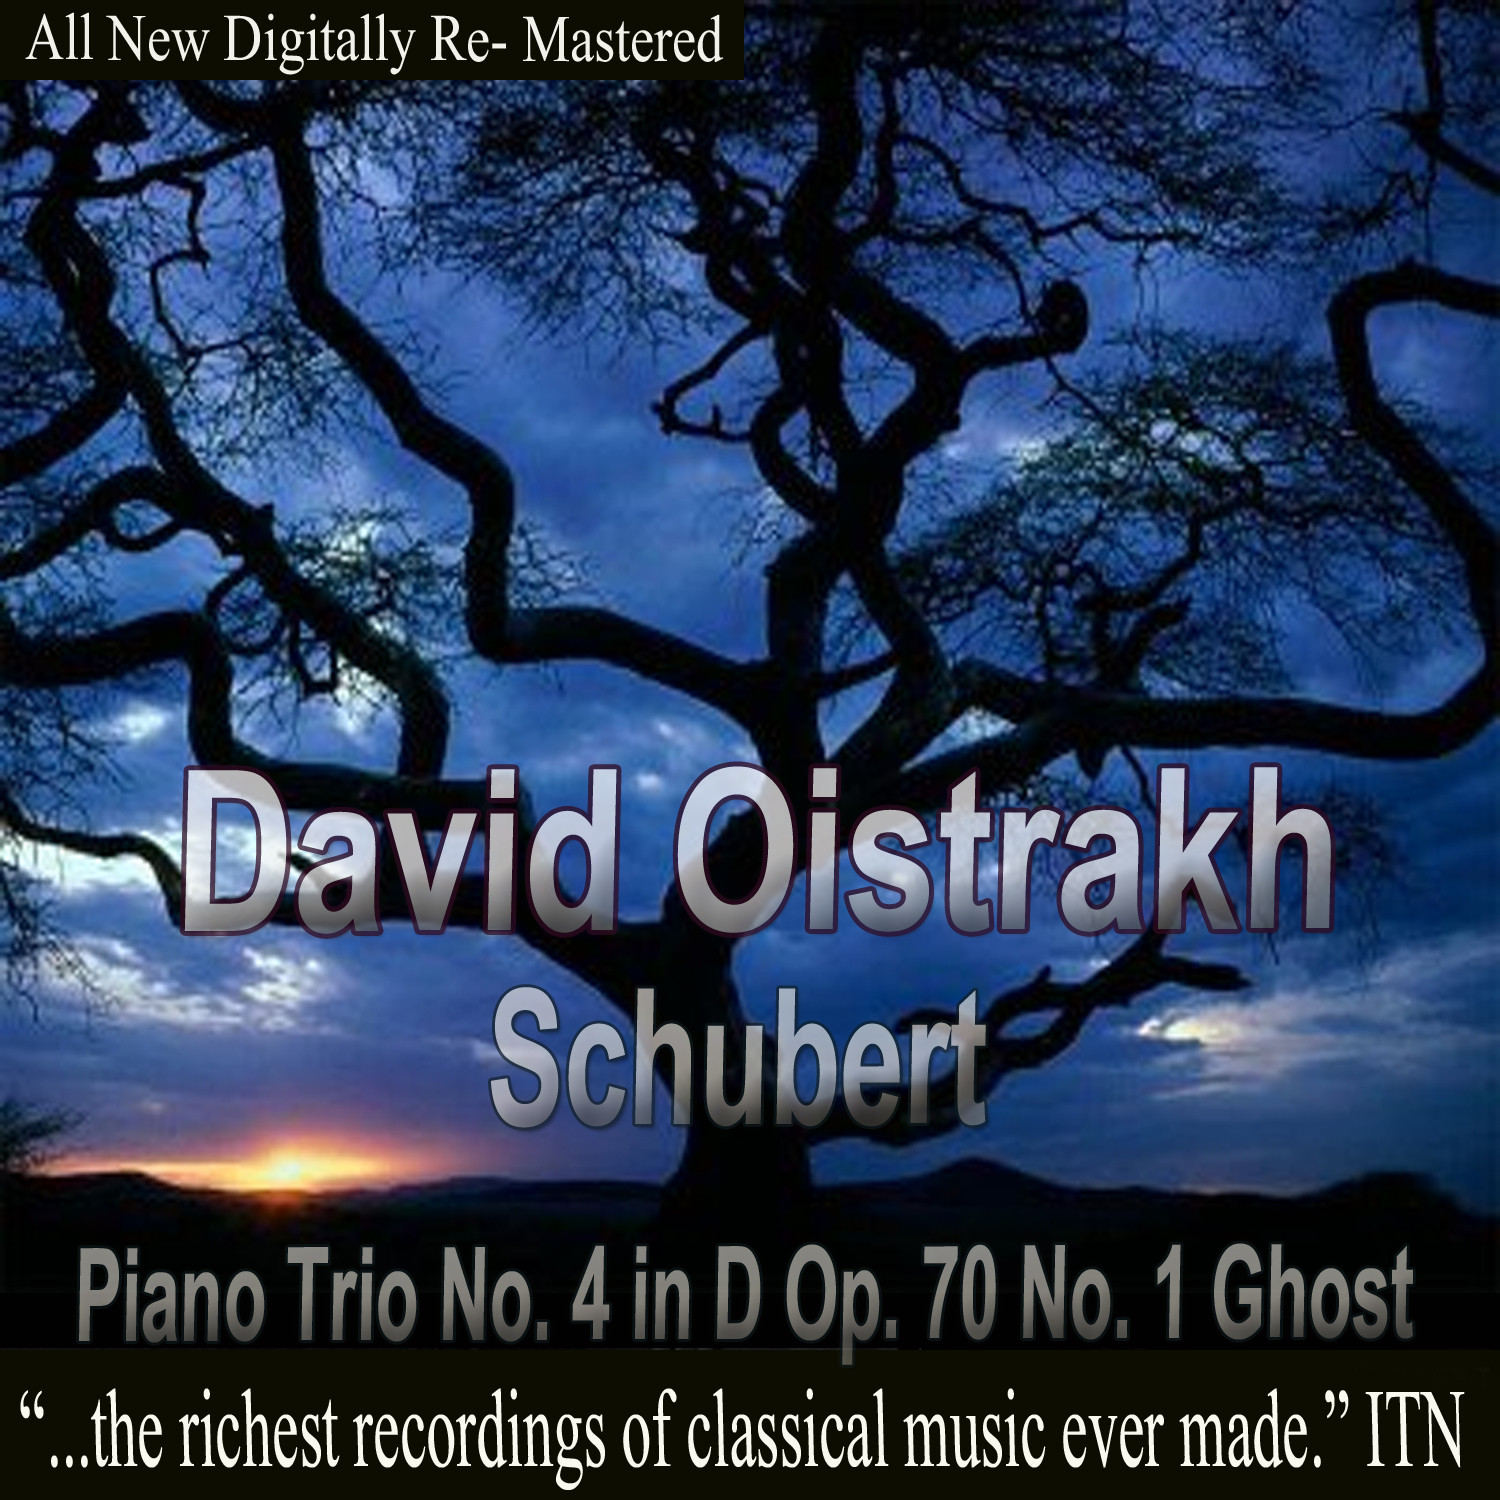 David Oistrakh - Schubert Piano Trio No. 4 in D Op. 70 No. 1 Ghost